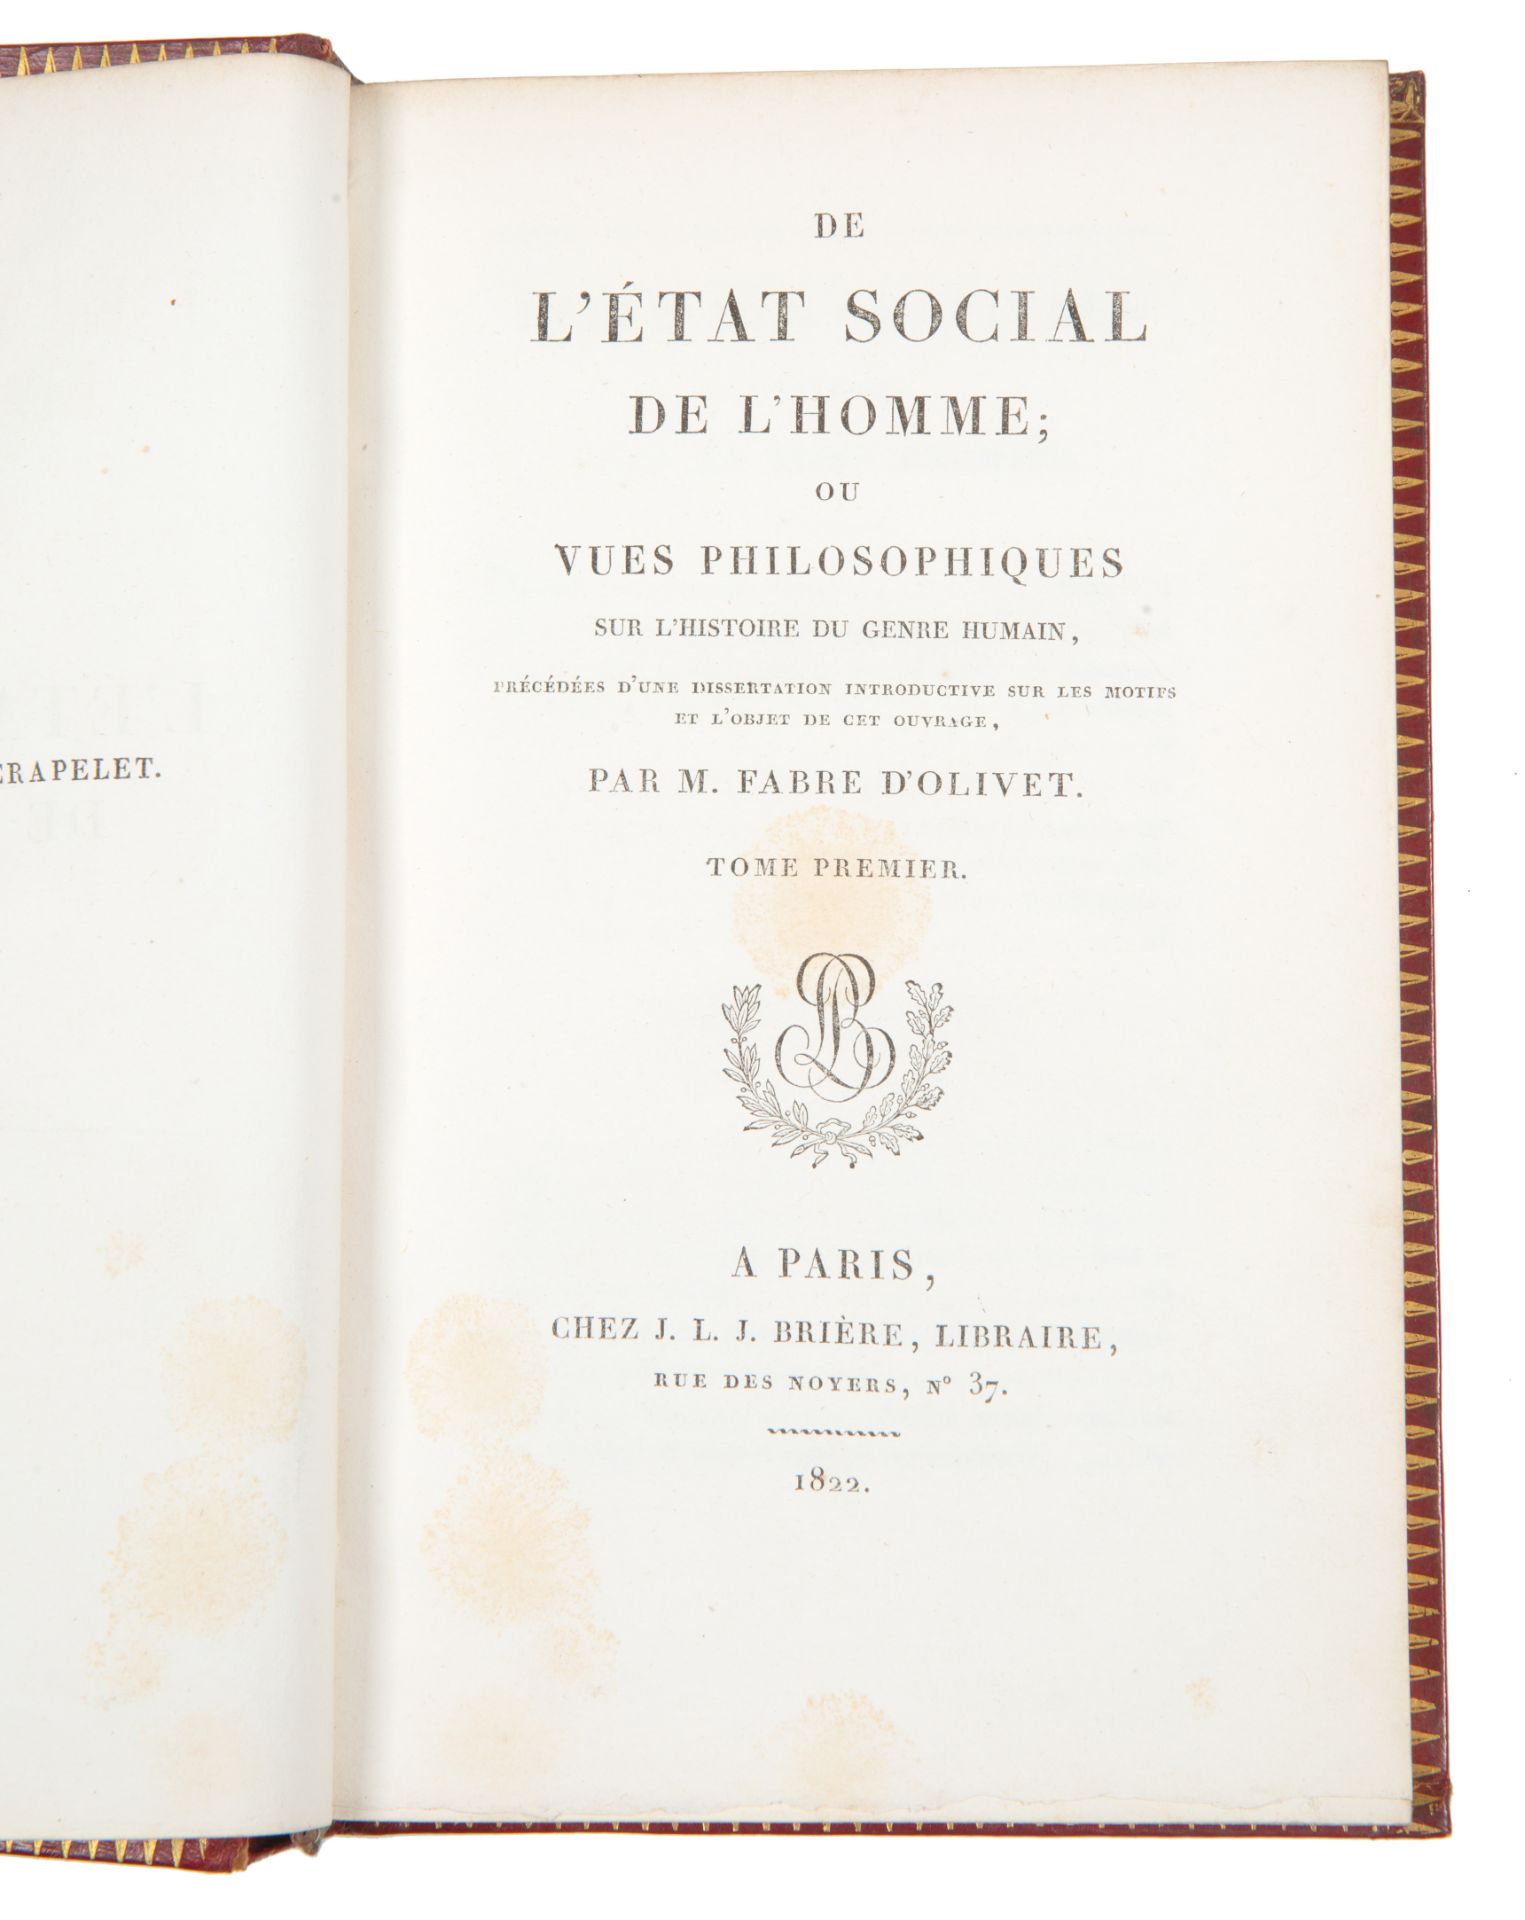 [SUPERB IMPERIAL PRESENTATION COPY] FABRE D’OLIVET, DE L’ETAT SOCIAL DE L’HOMME, 1822 - Image 5 of 12